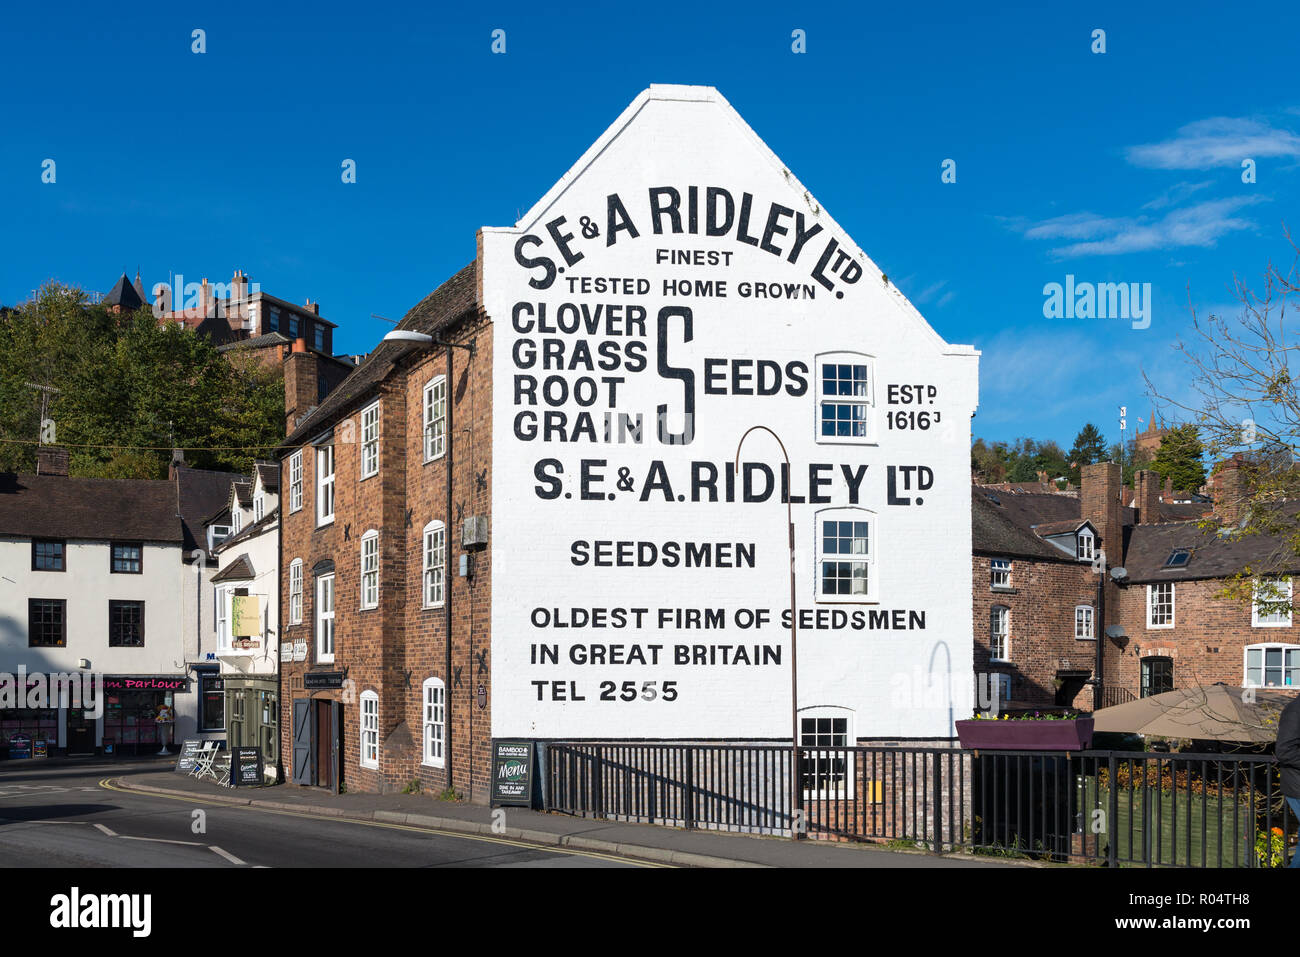 Großes Schild an der Wand für alte Ridley's Warehouse Samen malte neben der Brücke über den Fluss Severn in Bridgnorth, Shropshire Stockfoto